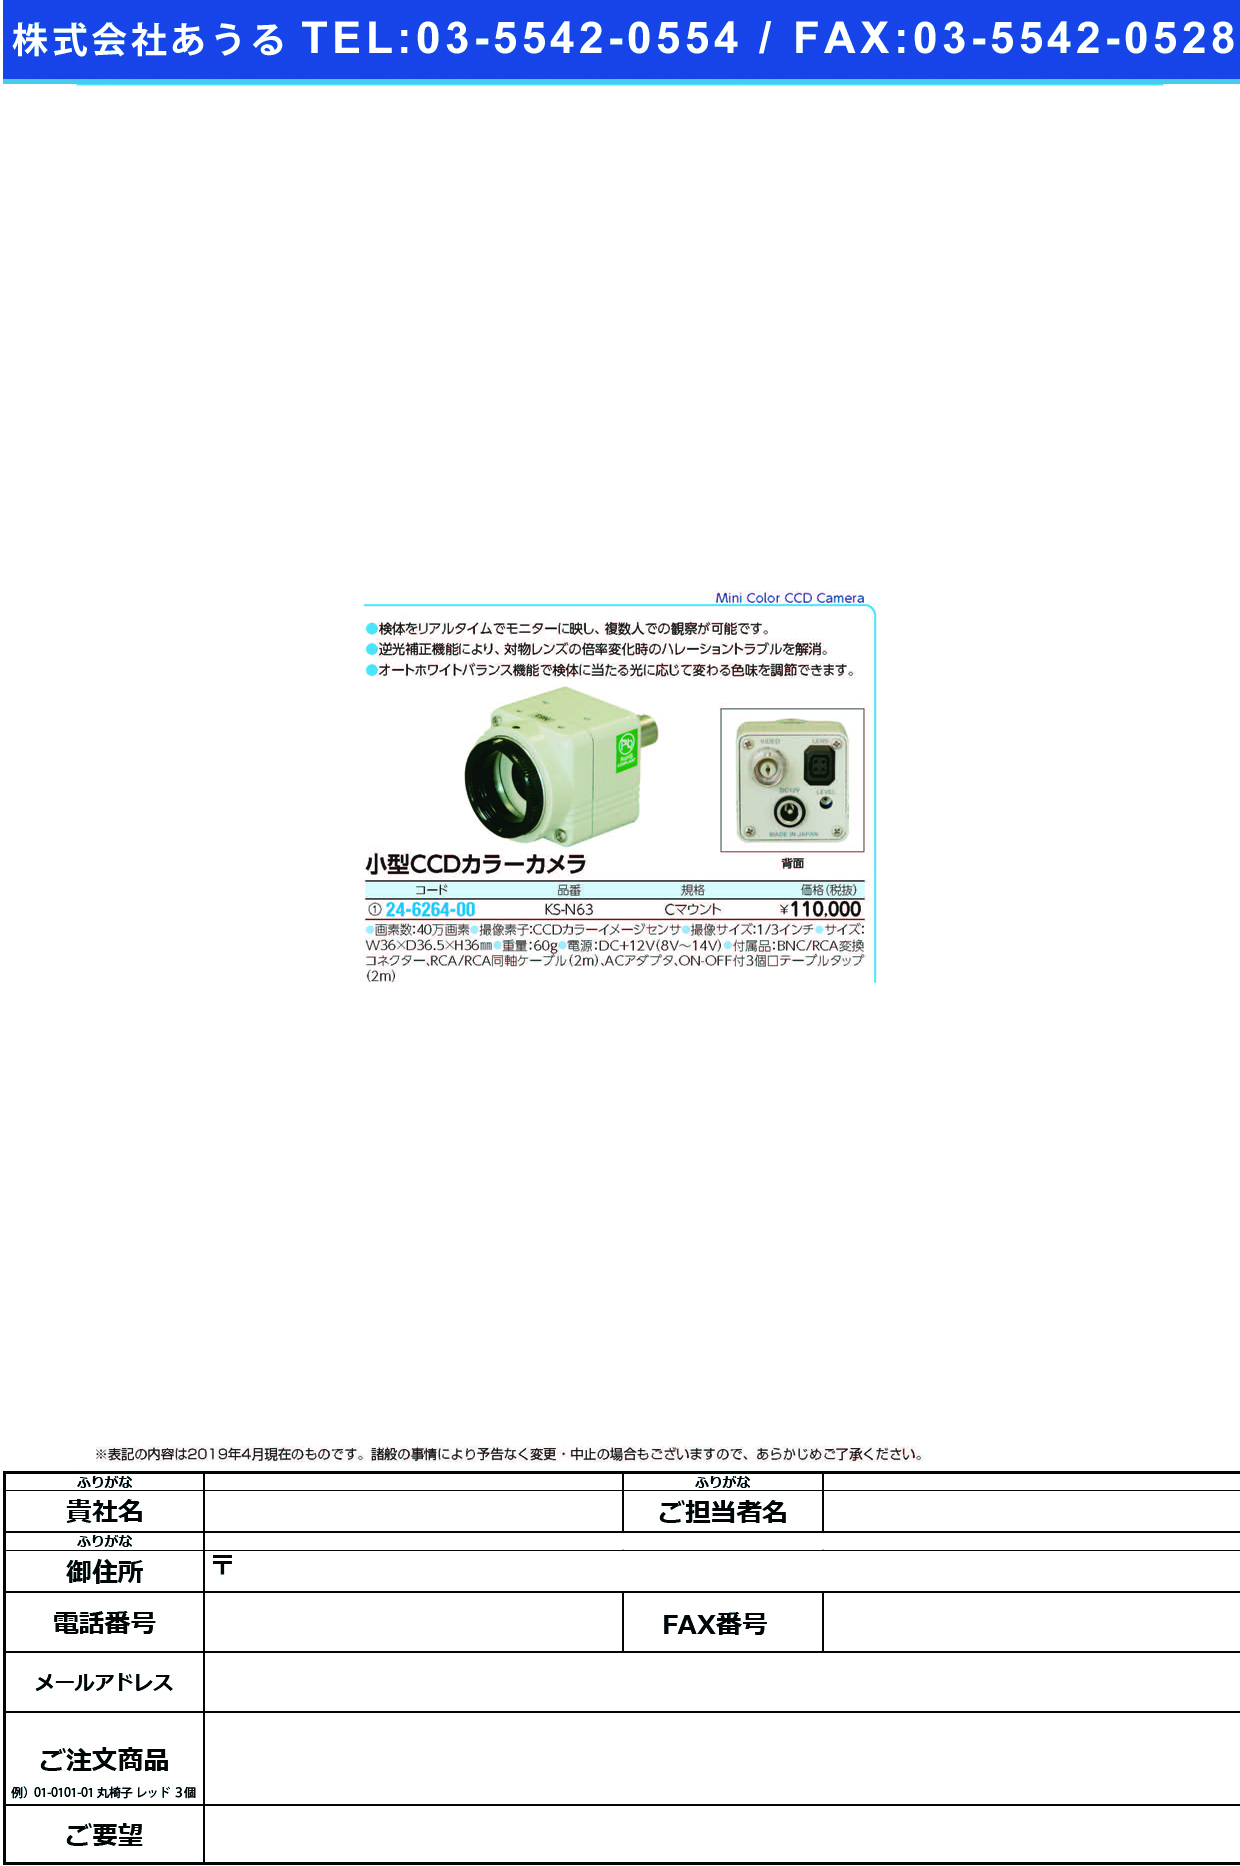 (24-6264-00)小型ＣＣＤカラーカメラ KS-N63 ｺｶﾞﾀCCDｶﾗｰｶﾒﾗ【1台単位】【2019年カタログ商品】